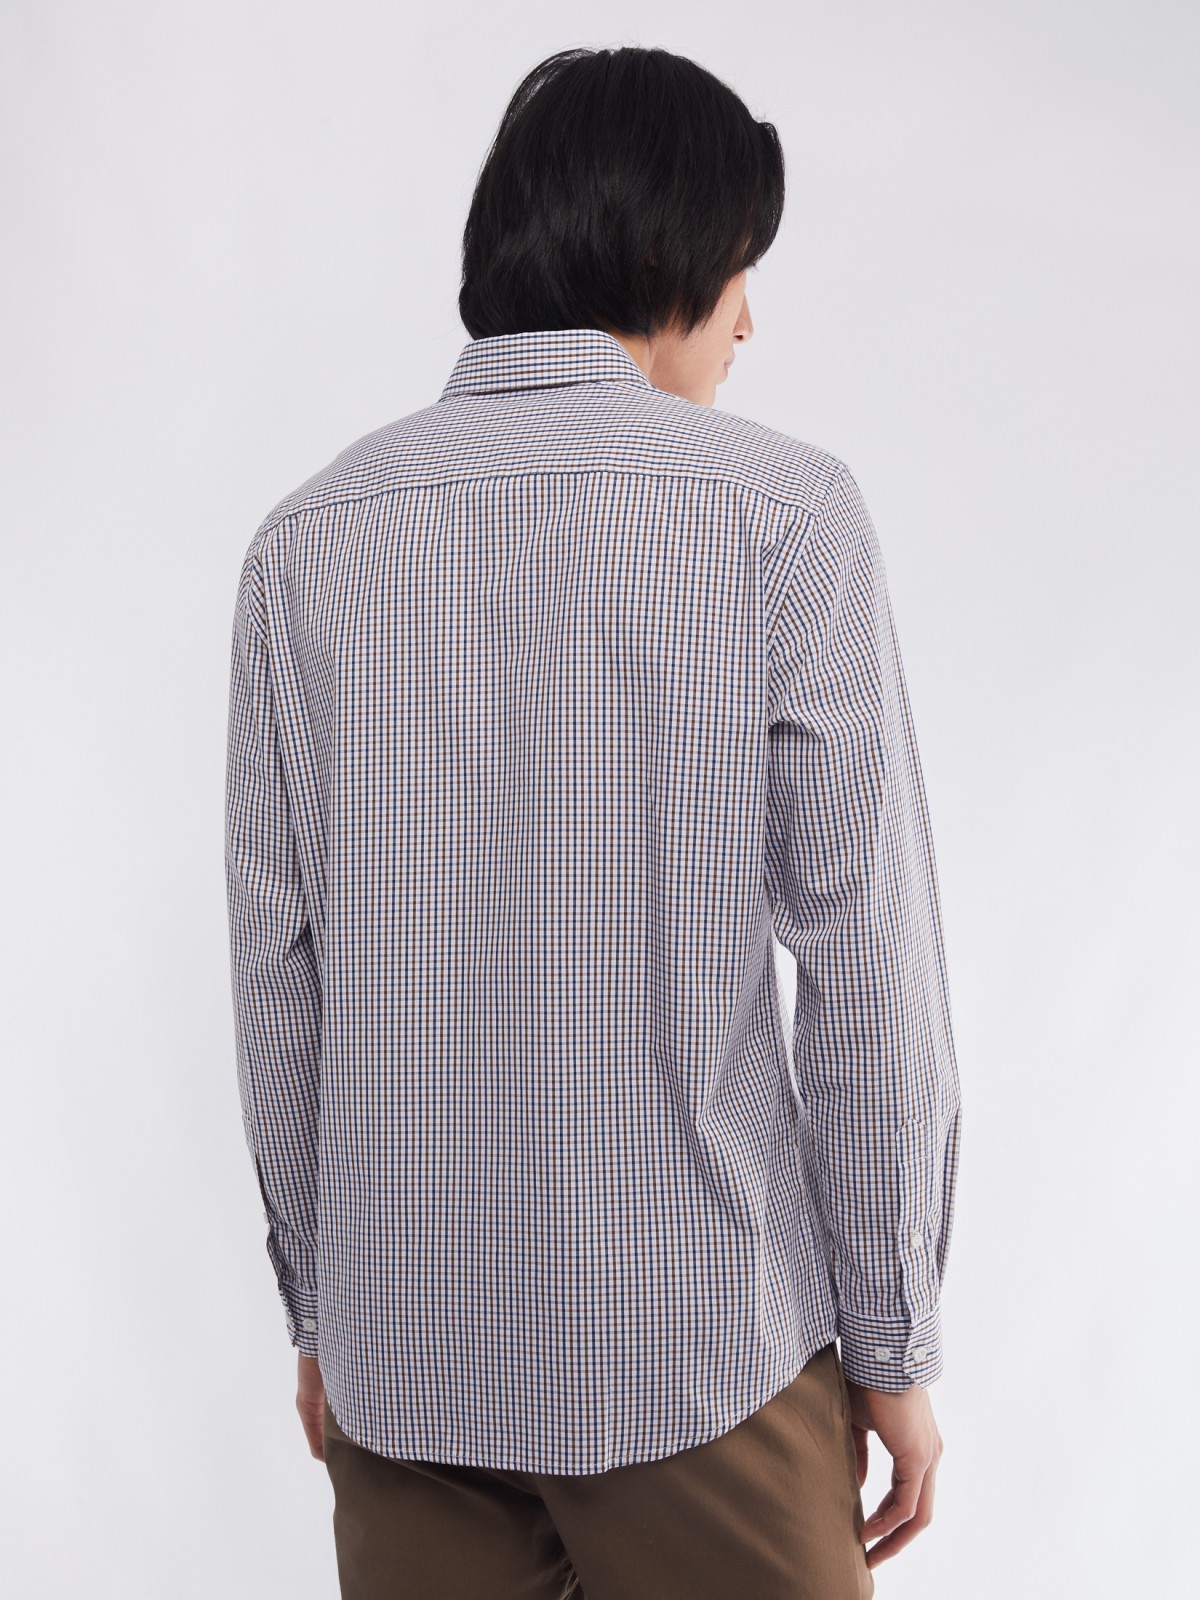 Офисная рубашка прямого силуэта с узором в клетку zolla 014112159012, цвет бежевый, размер M - фото 6